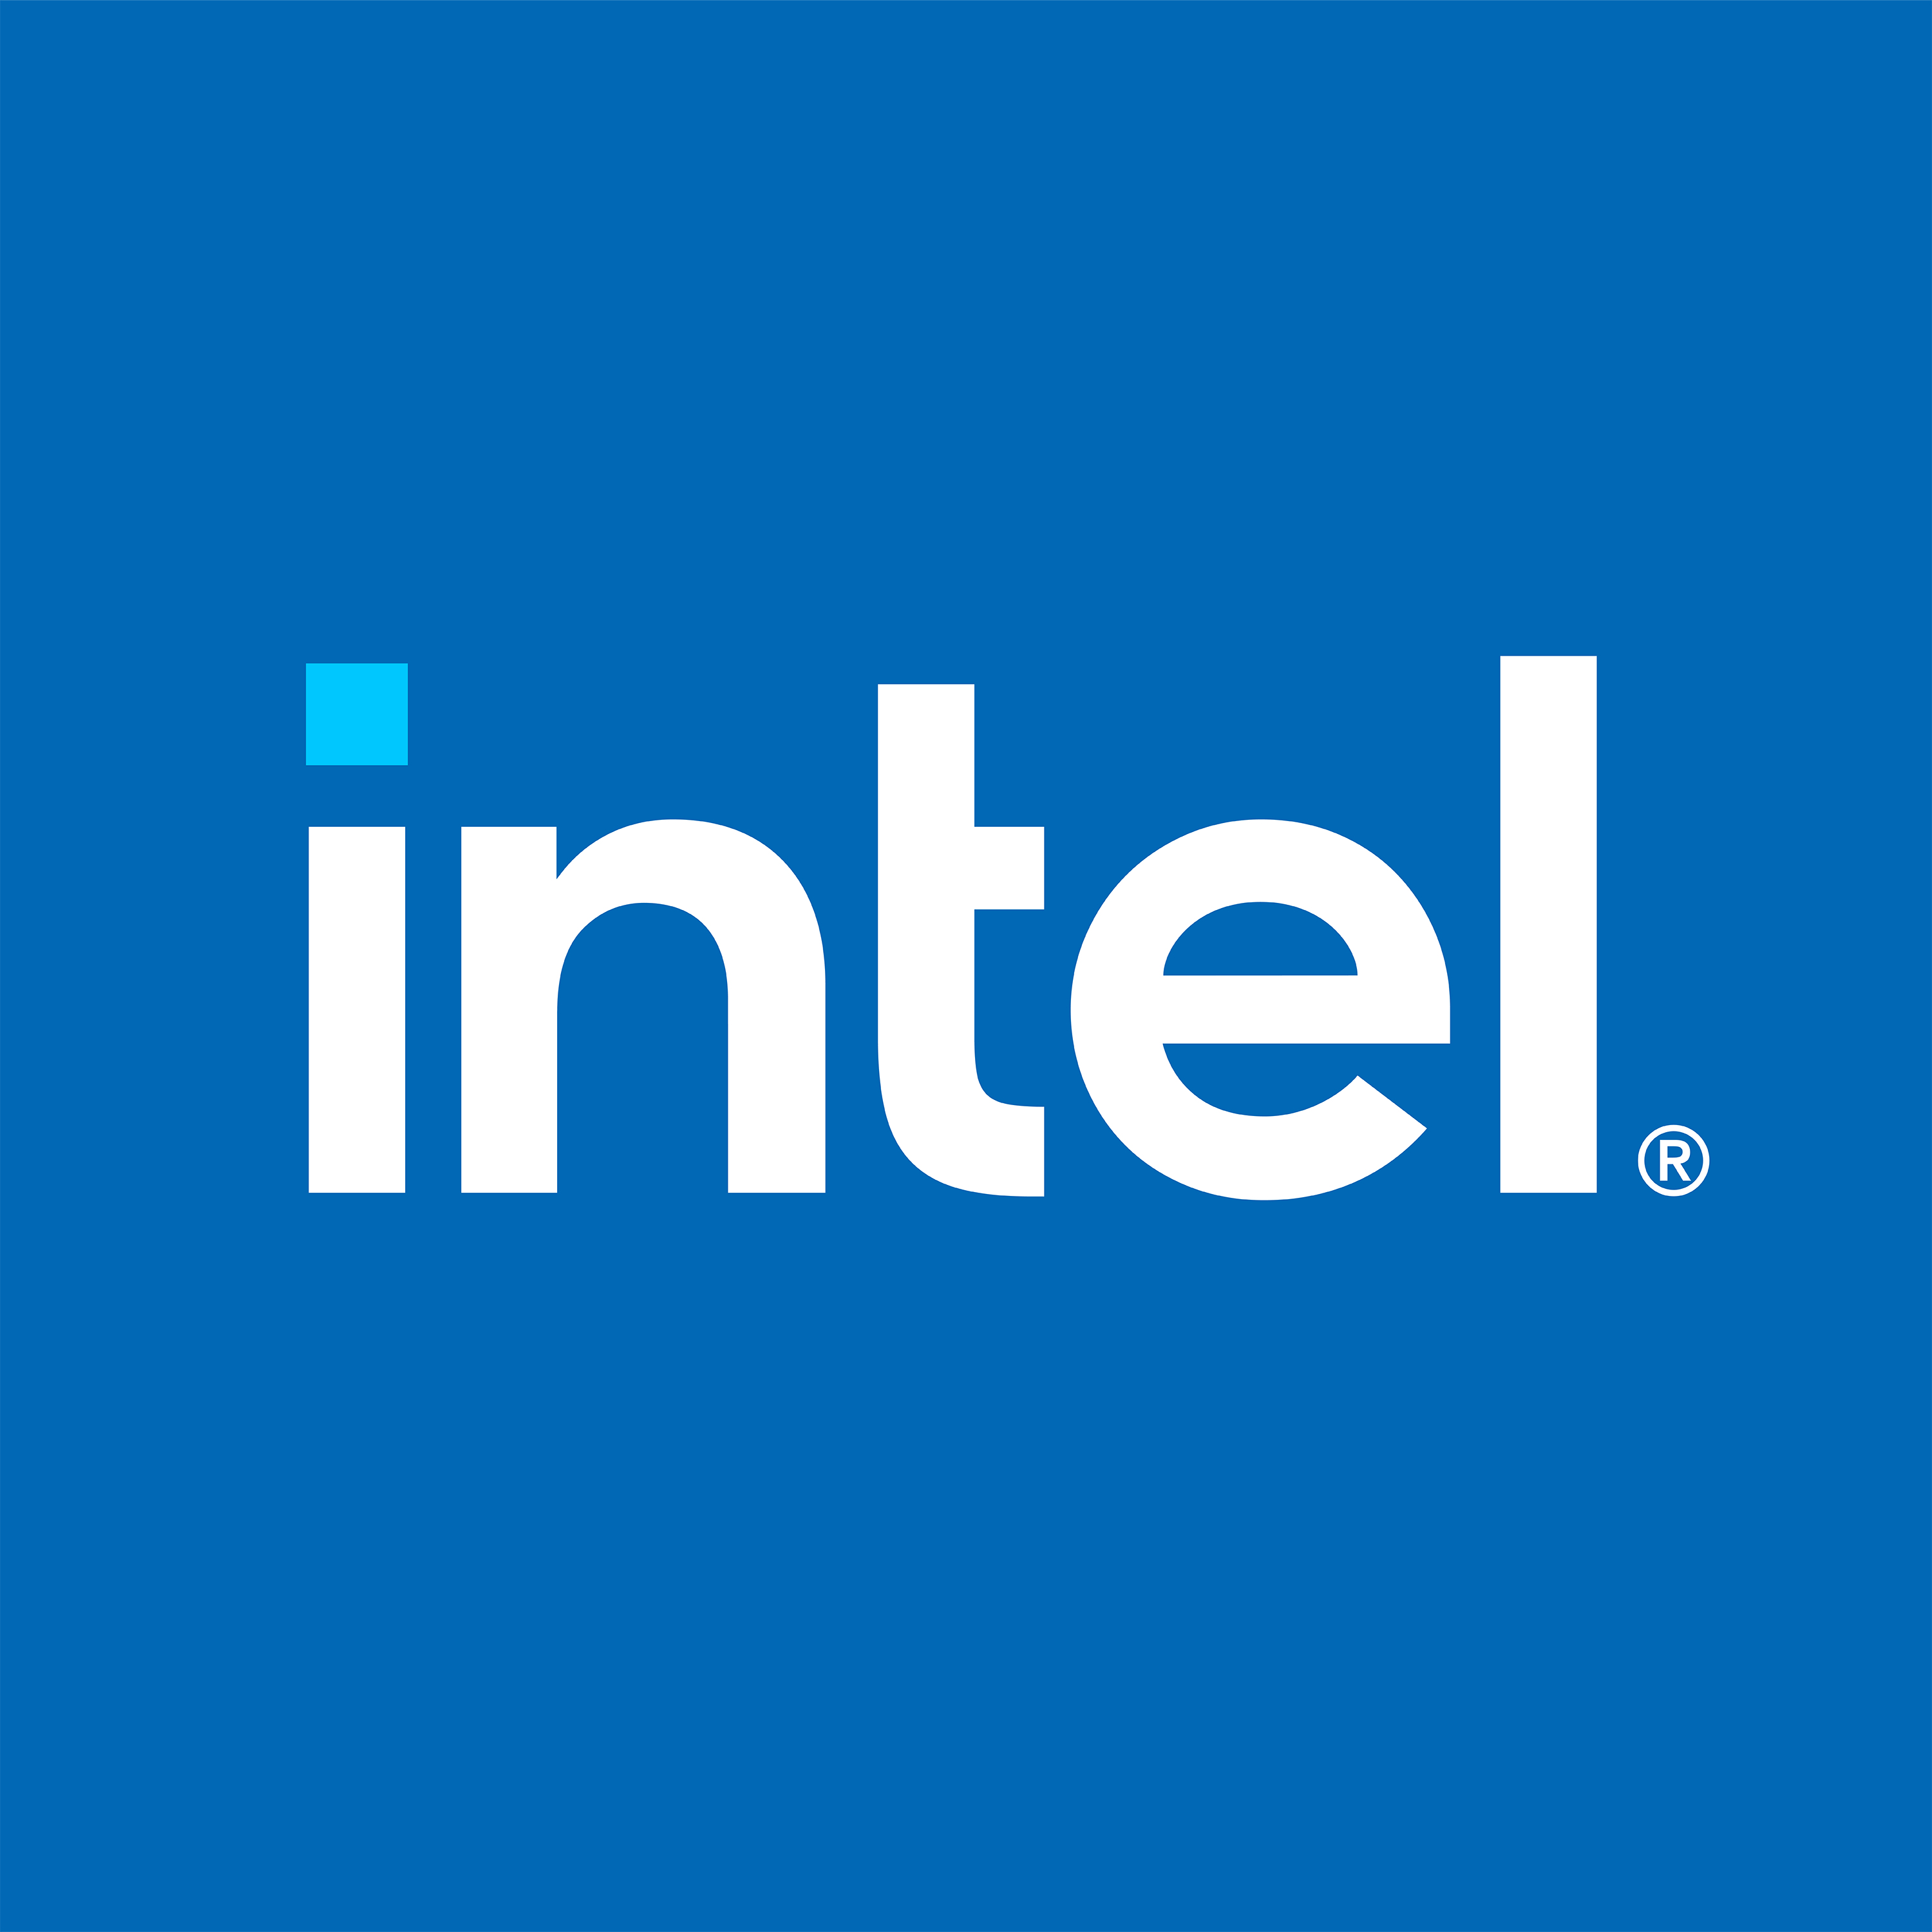 Intel RAID Maintenance Free Backup - Battery Backup Unit (BBU)